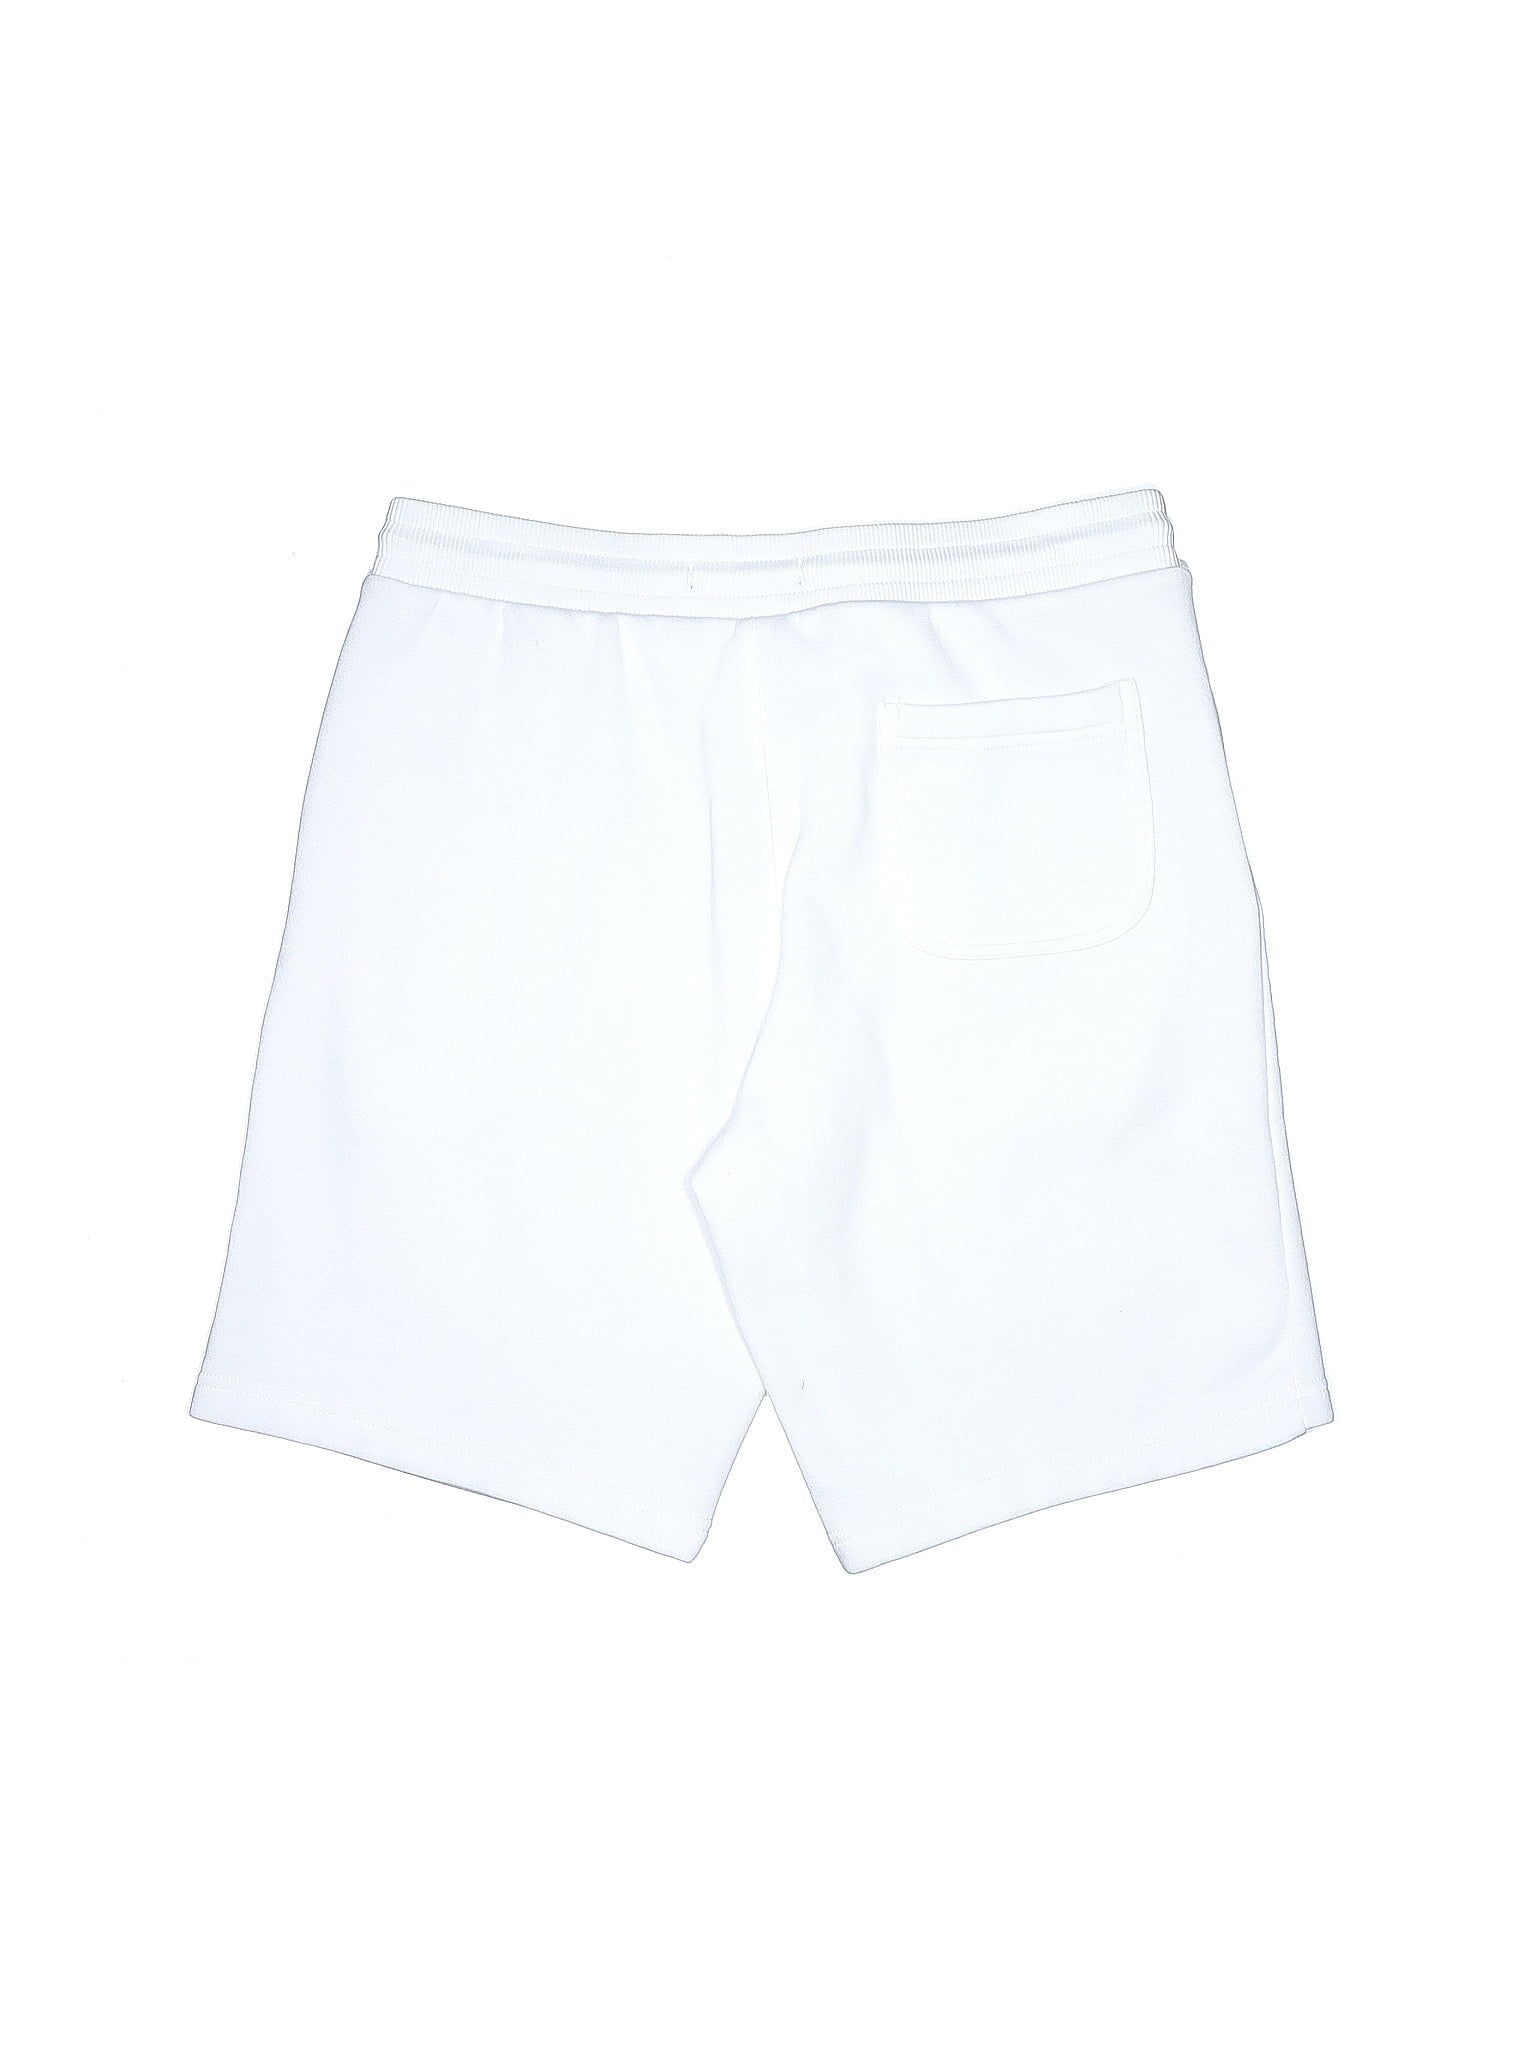 Knit/Sweat Shorts size - S